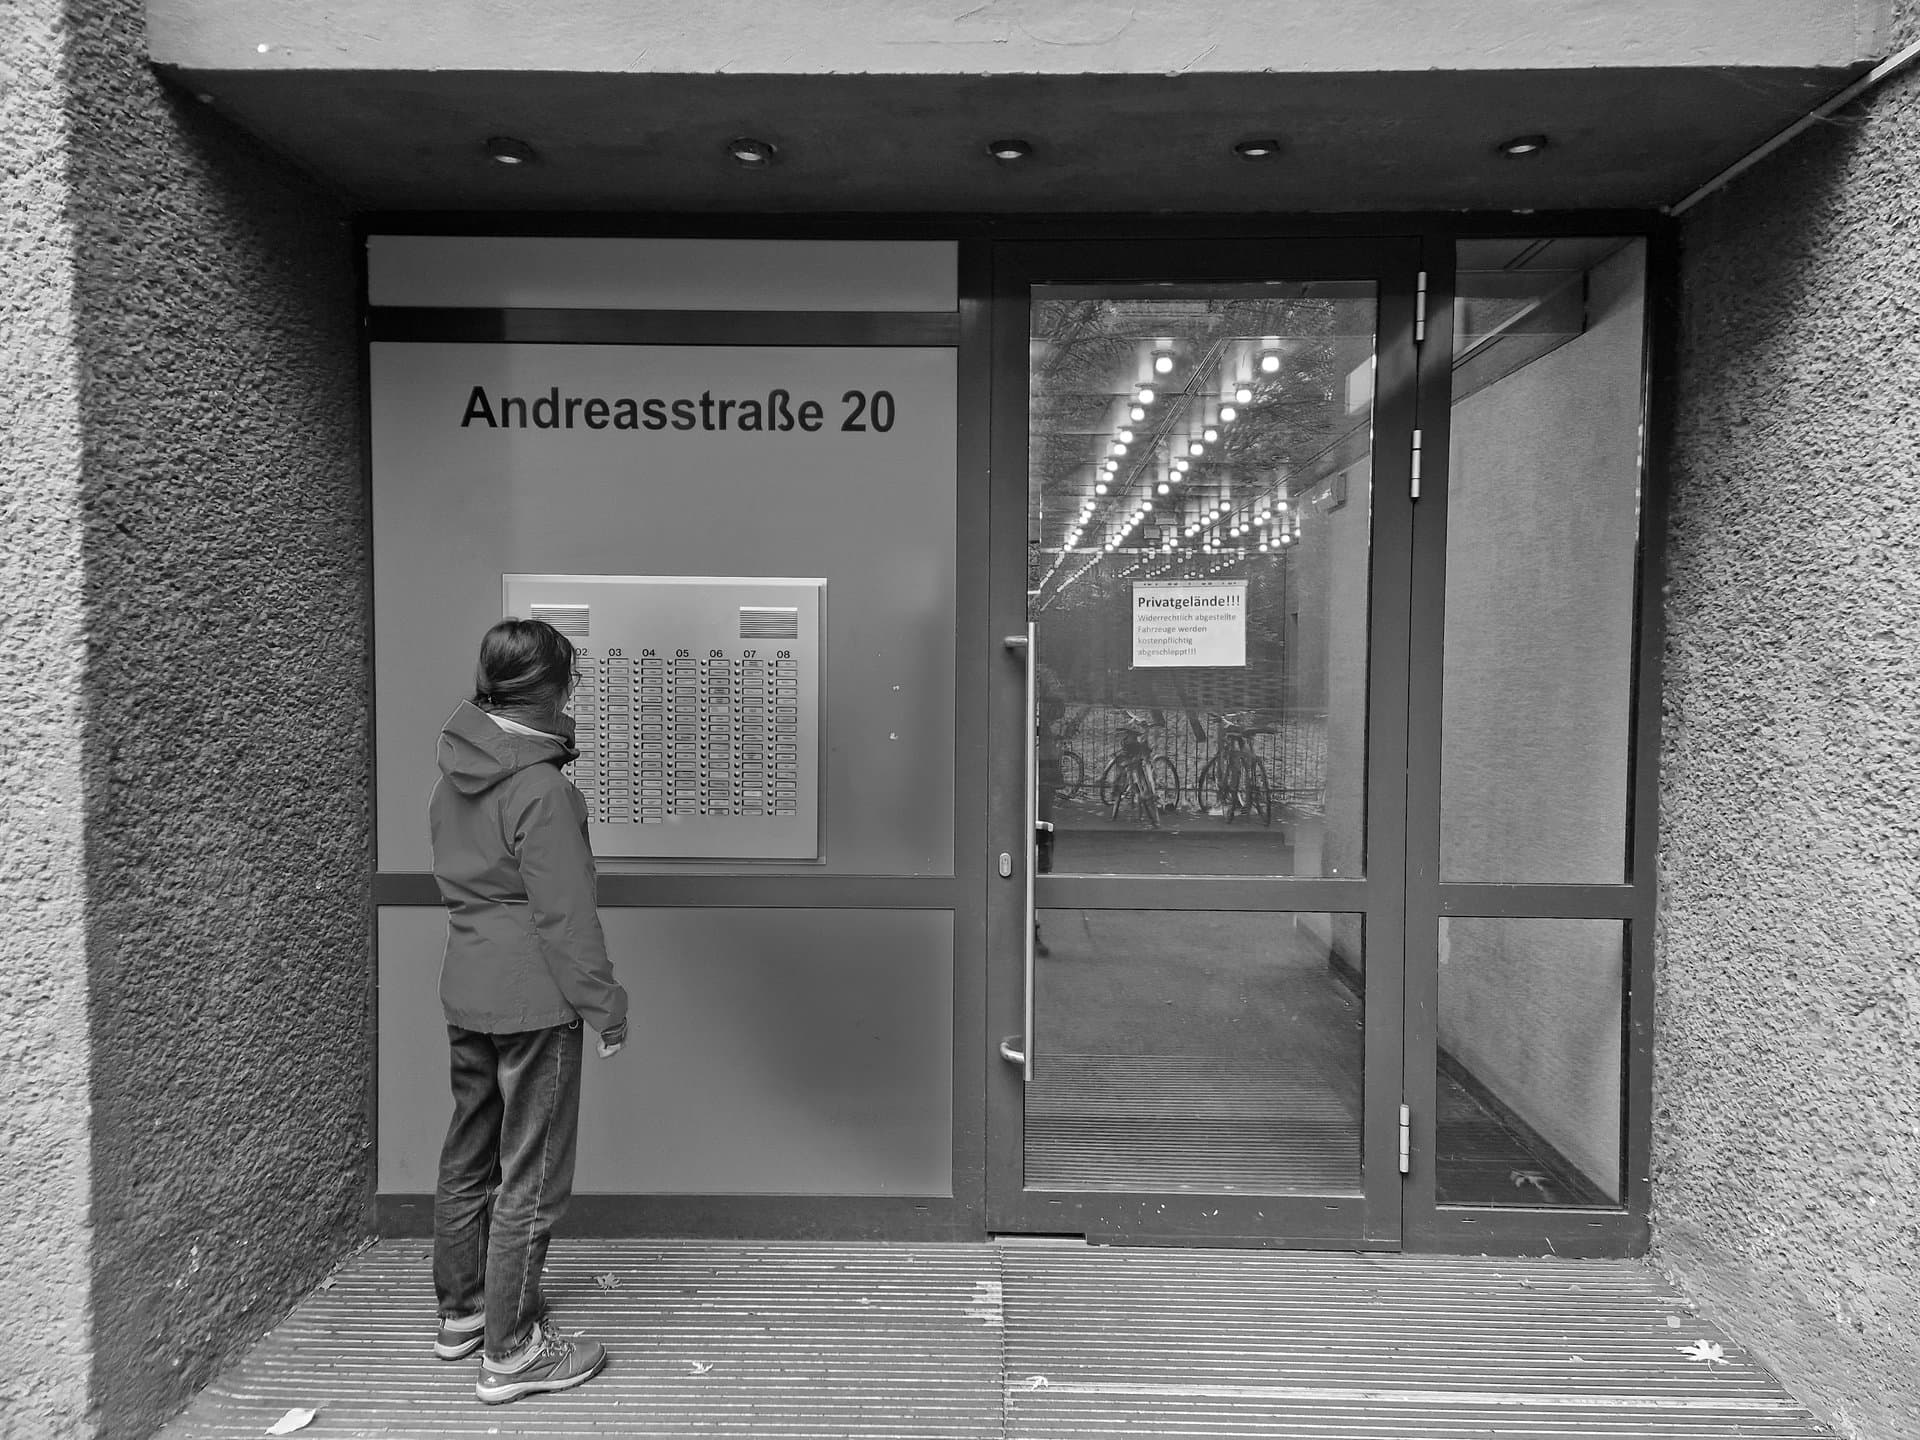 La porte d'entrée d'Andreastraße 20. Clara regarde les dizaines de boutons d'interphones du bâtiment.